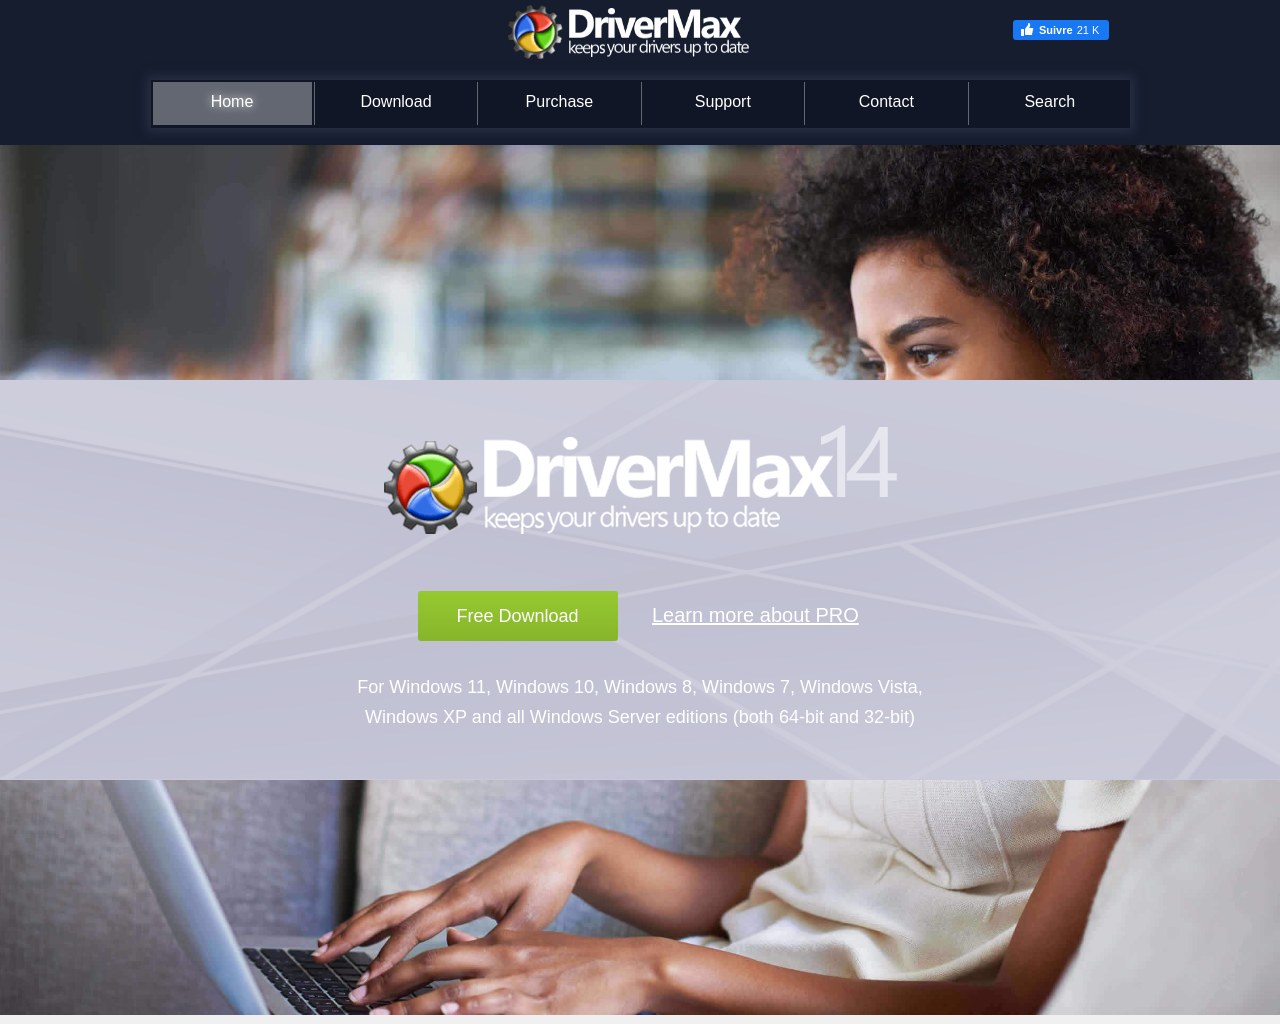 www.drivermax.com